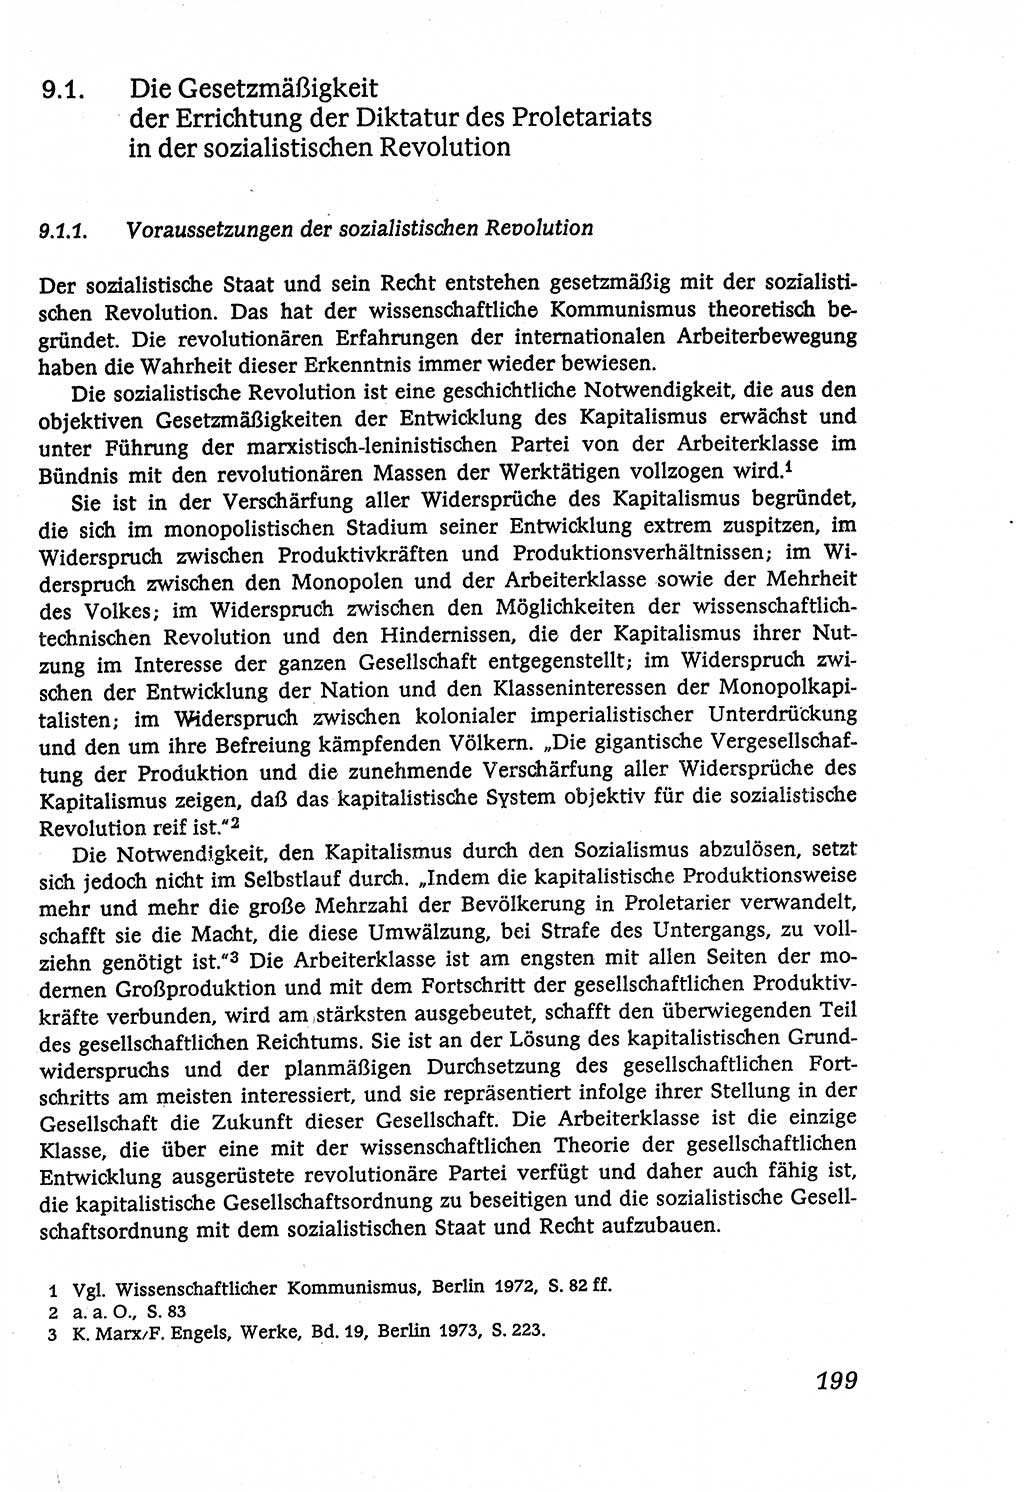 Marxistisch-leninistische (ML) Staats- und Rechtstheorie [Deutsche Demokratische Republik (DDR)], Lehrbuch 1980, Seite 199 (ML St.-R.-Th. DDR Lb. 1980, S. 199)